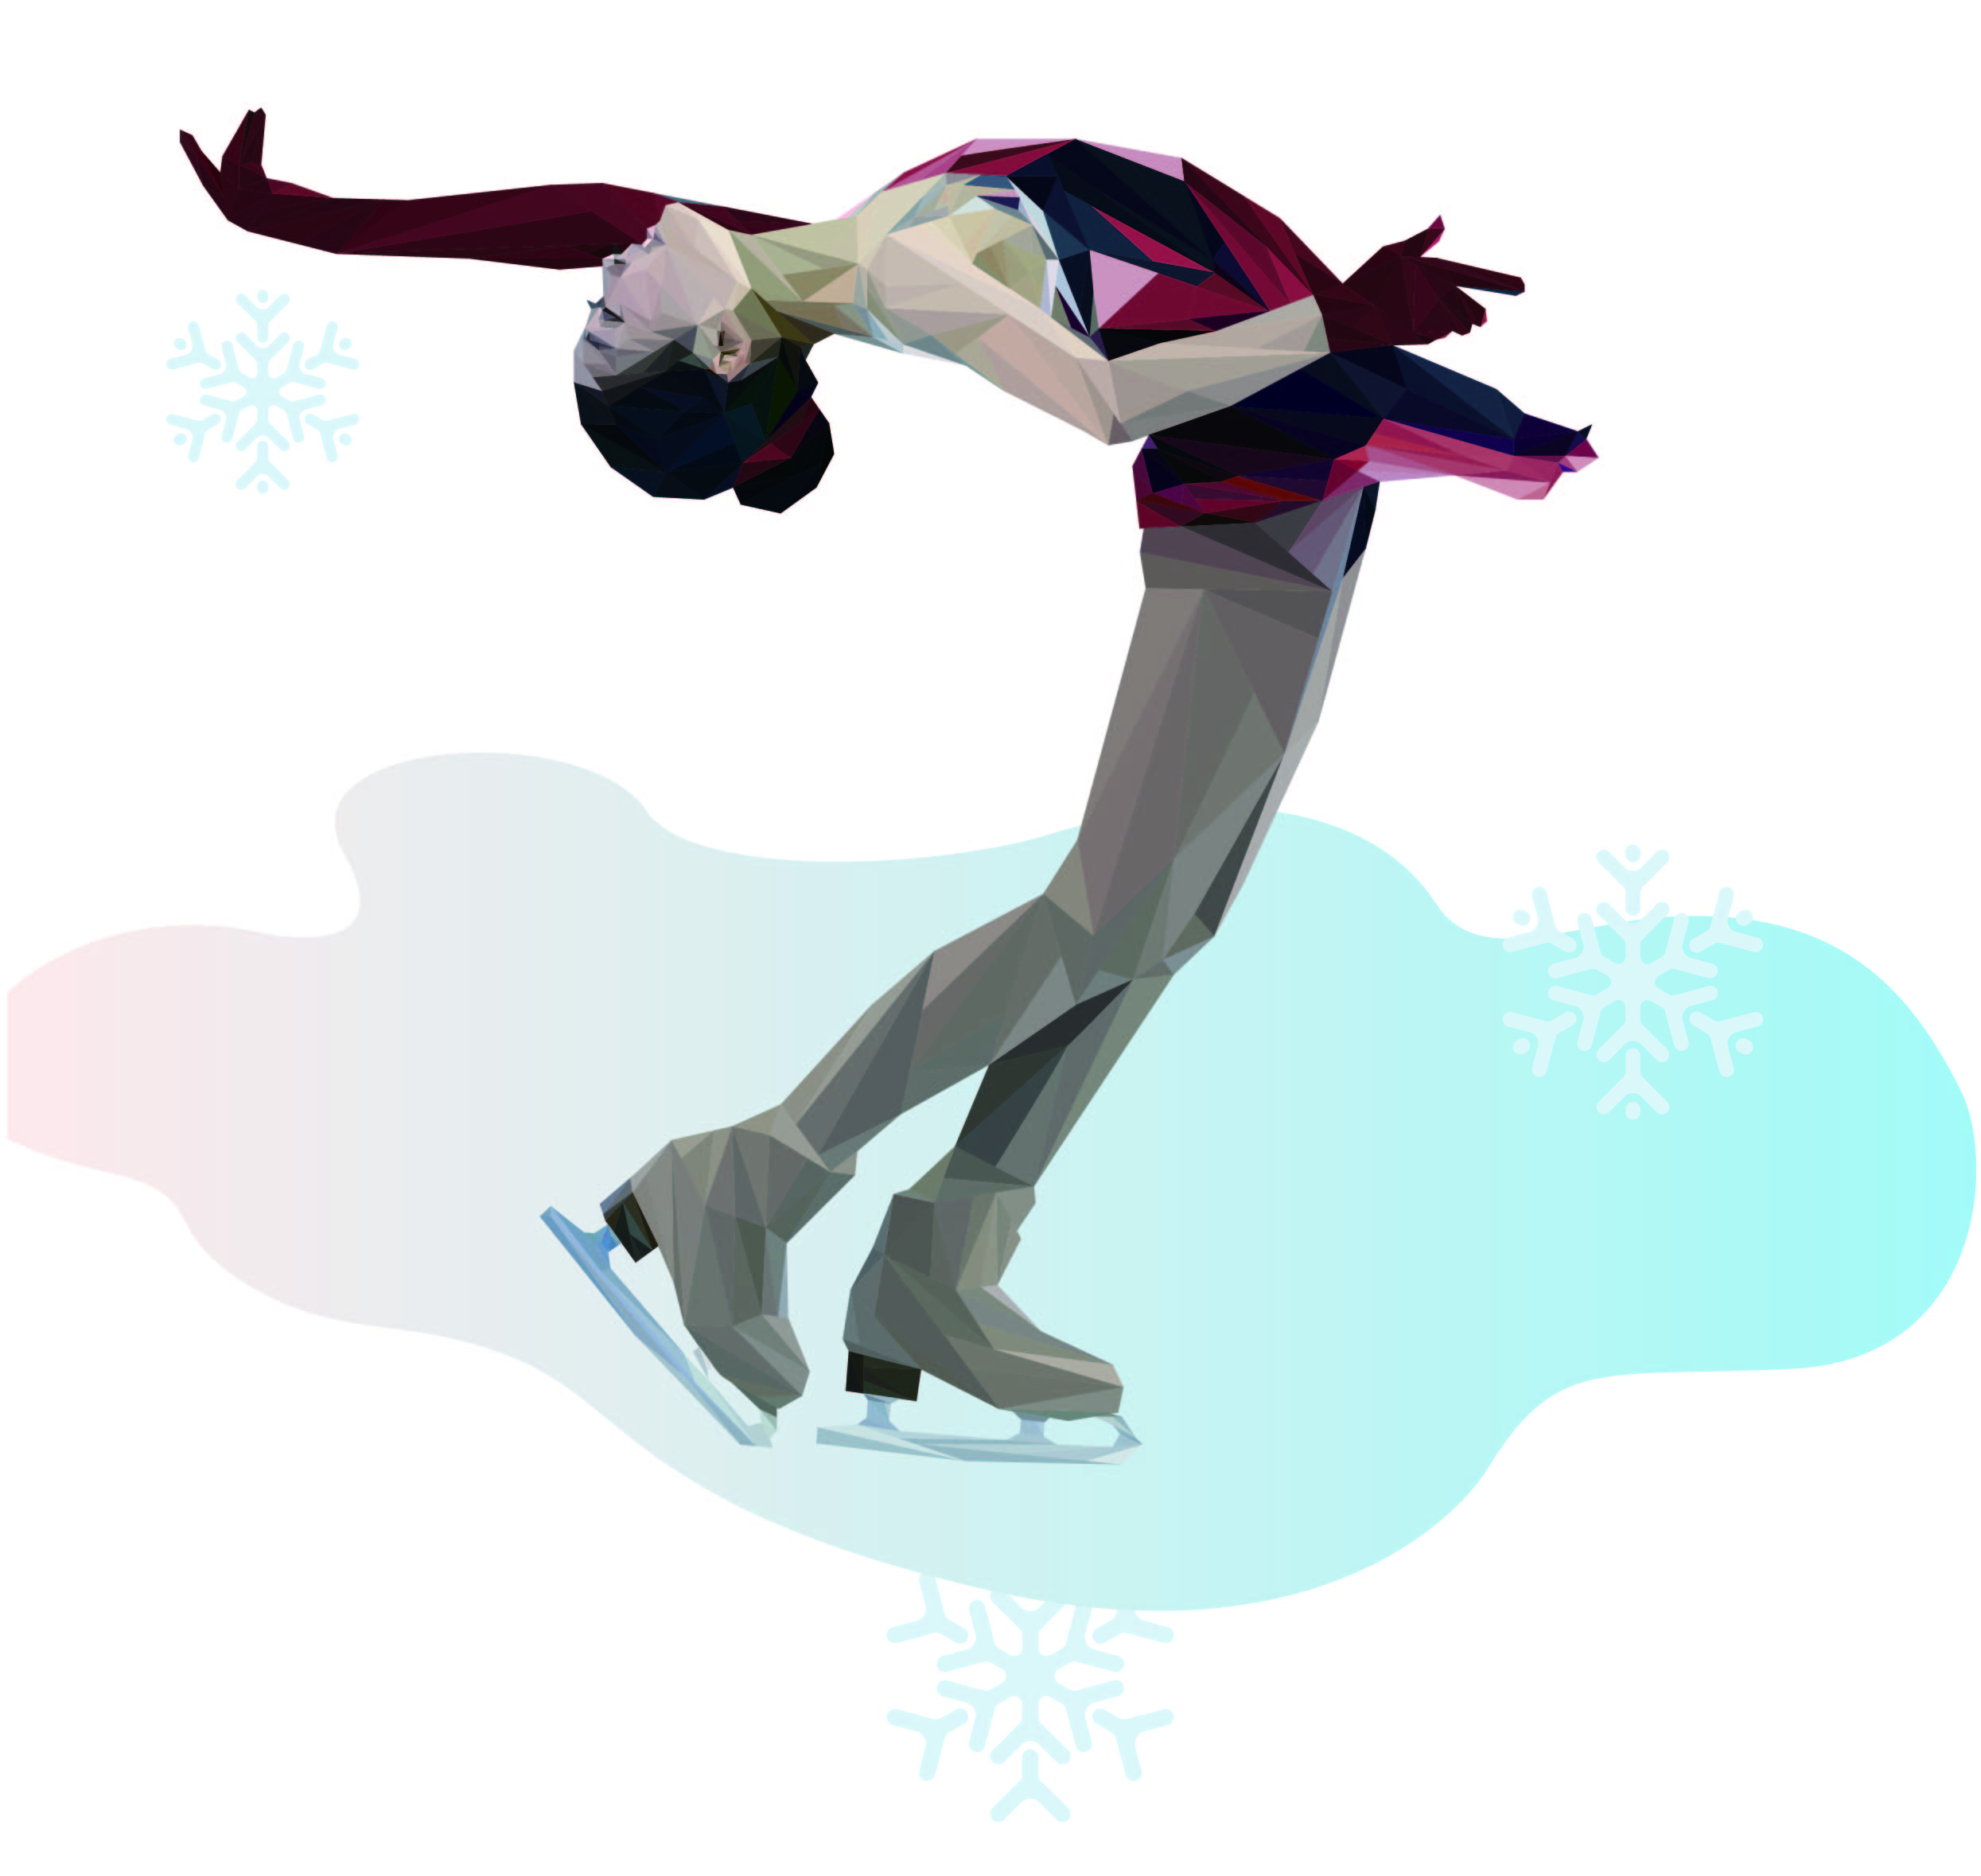 图解北京冬奥项目|"花样滑冰"——充满艺术气息的惊险与美丽